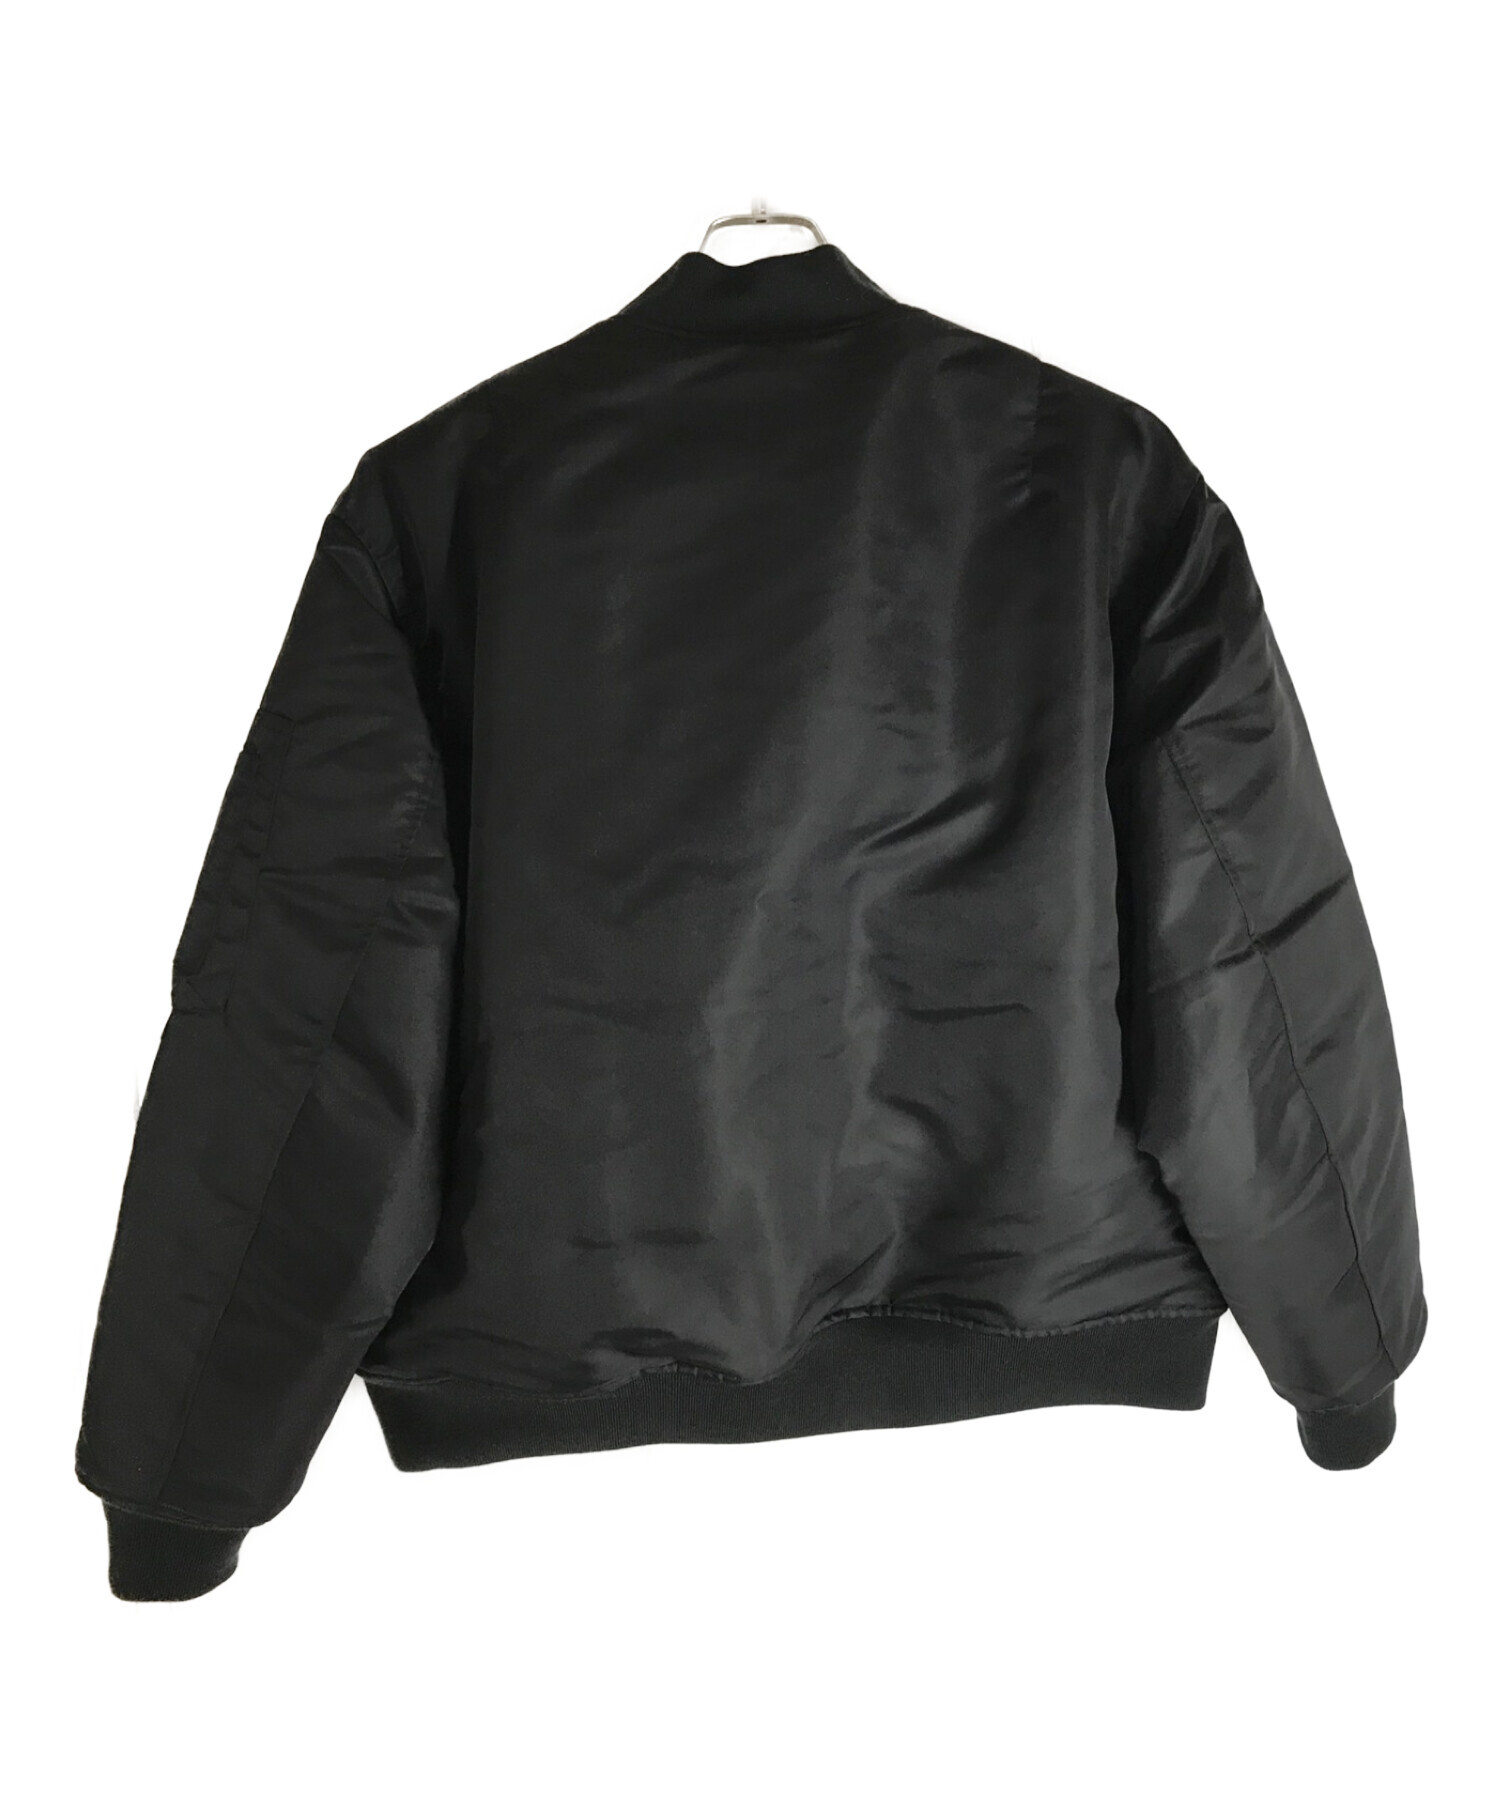 VANS (ヴァンズ) マルチポケットビッグMA-1ジャケット ブラック サイズ:L